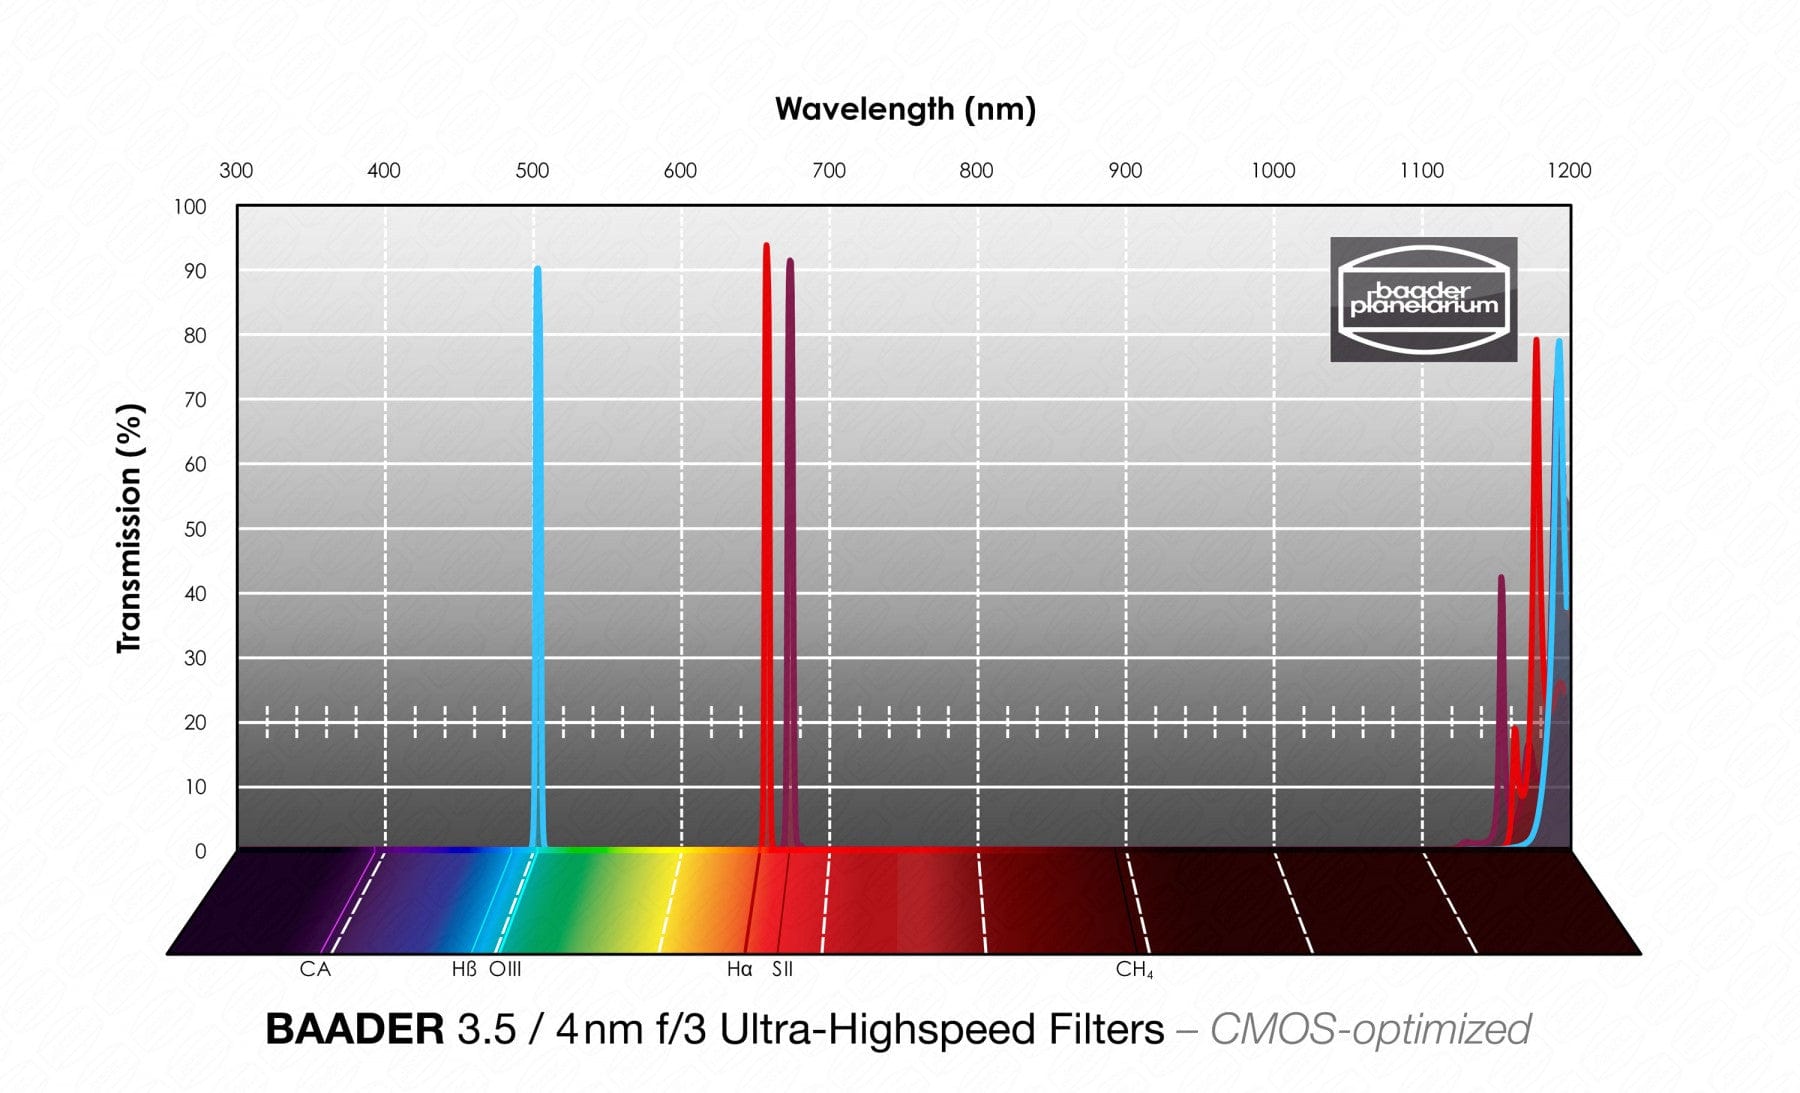 Baader Planetarium Accessory Baader 3.5 / 4nm f/3 Ultra-Highspeed-Filterset 36mm – CMOS-optimized (H-alpha / O-III / S-II)